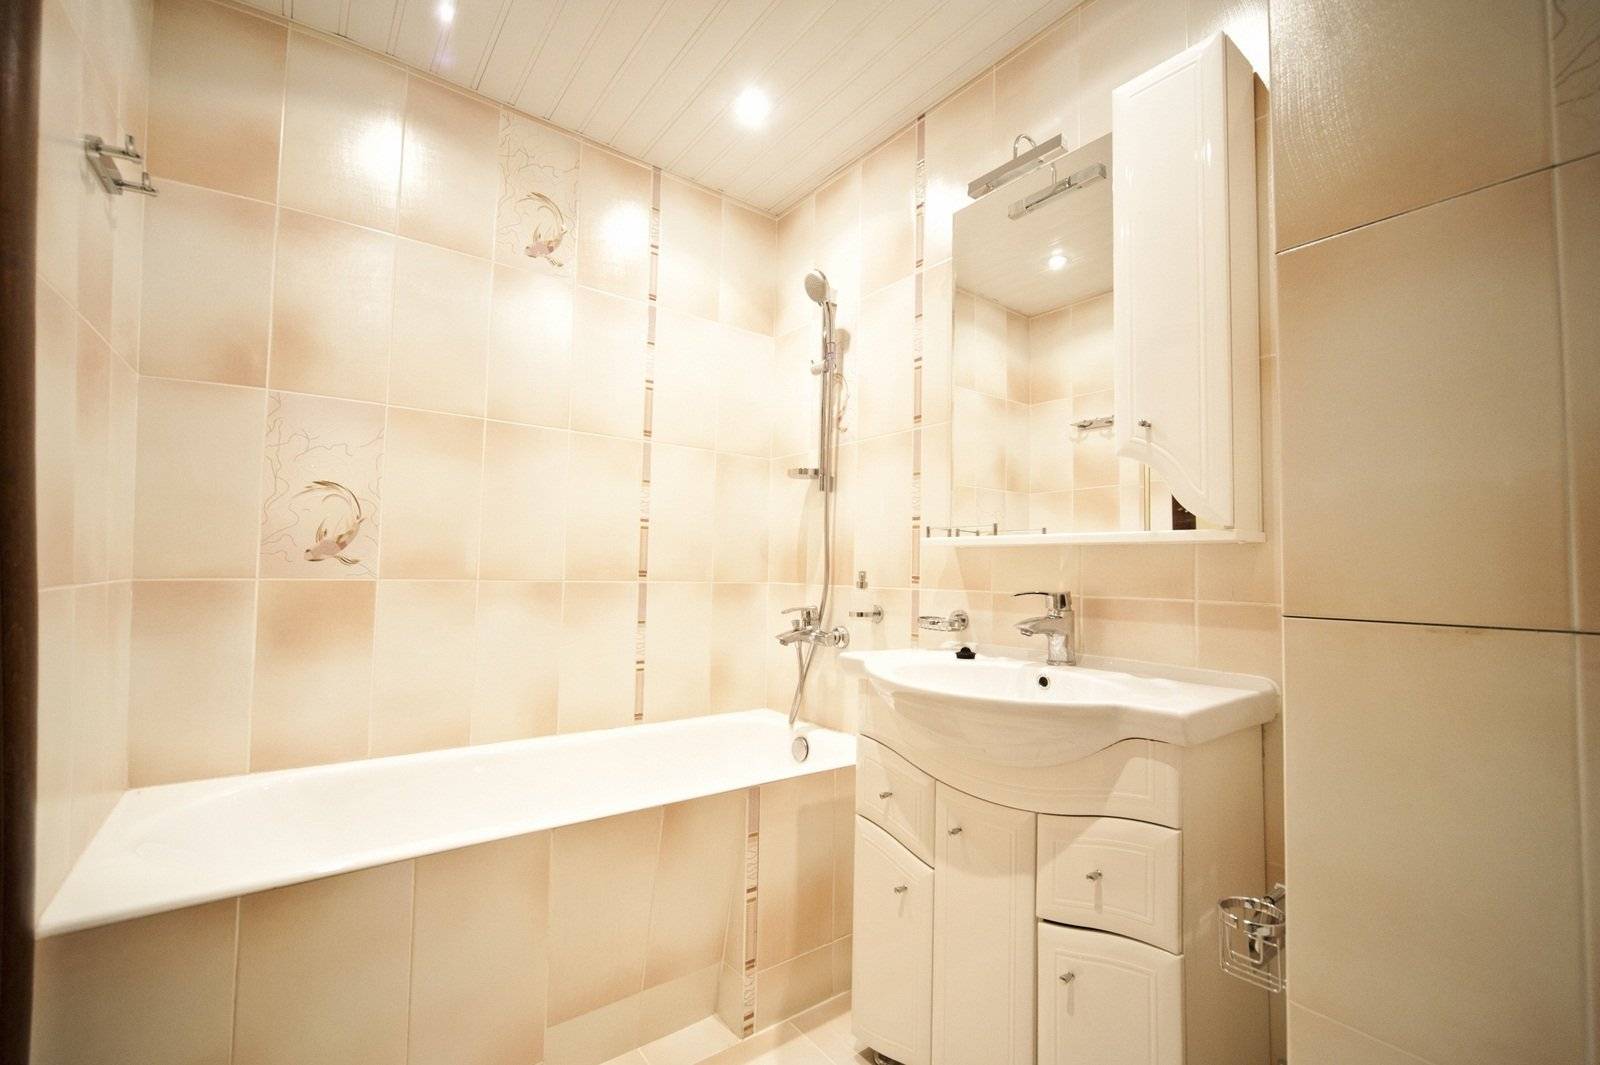 Как отделать стены в ванной комнате - советы профессионалов, варианты, фото, видео